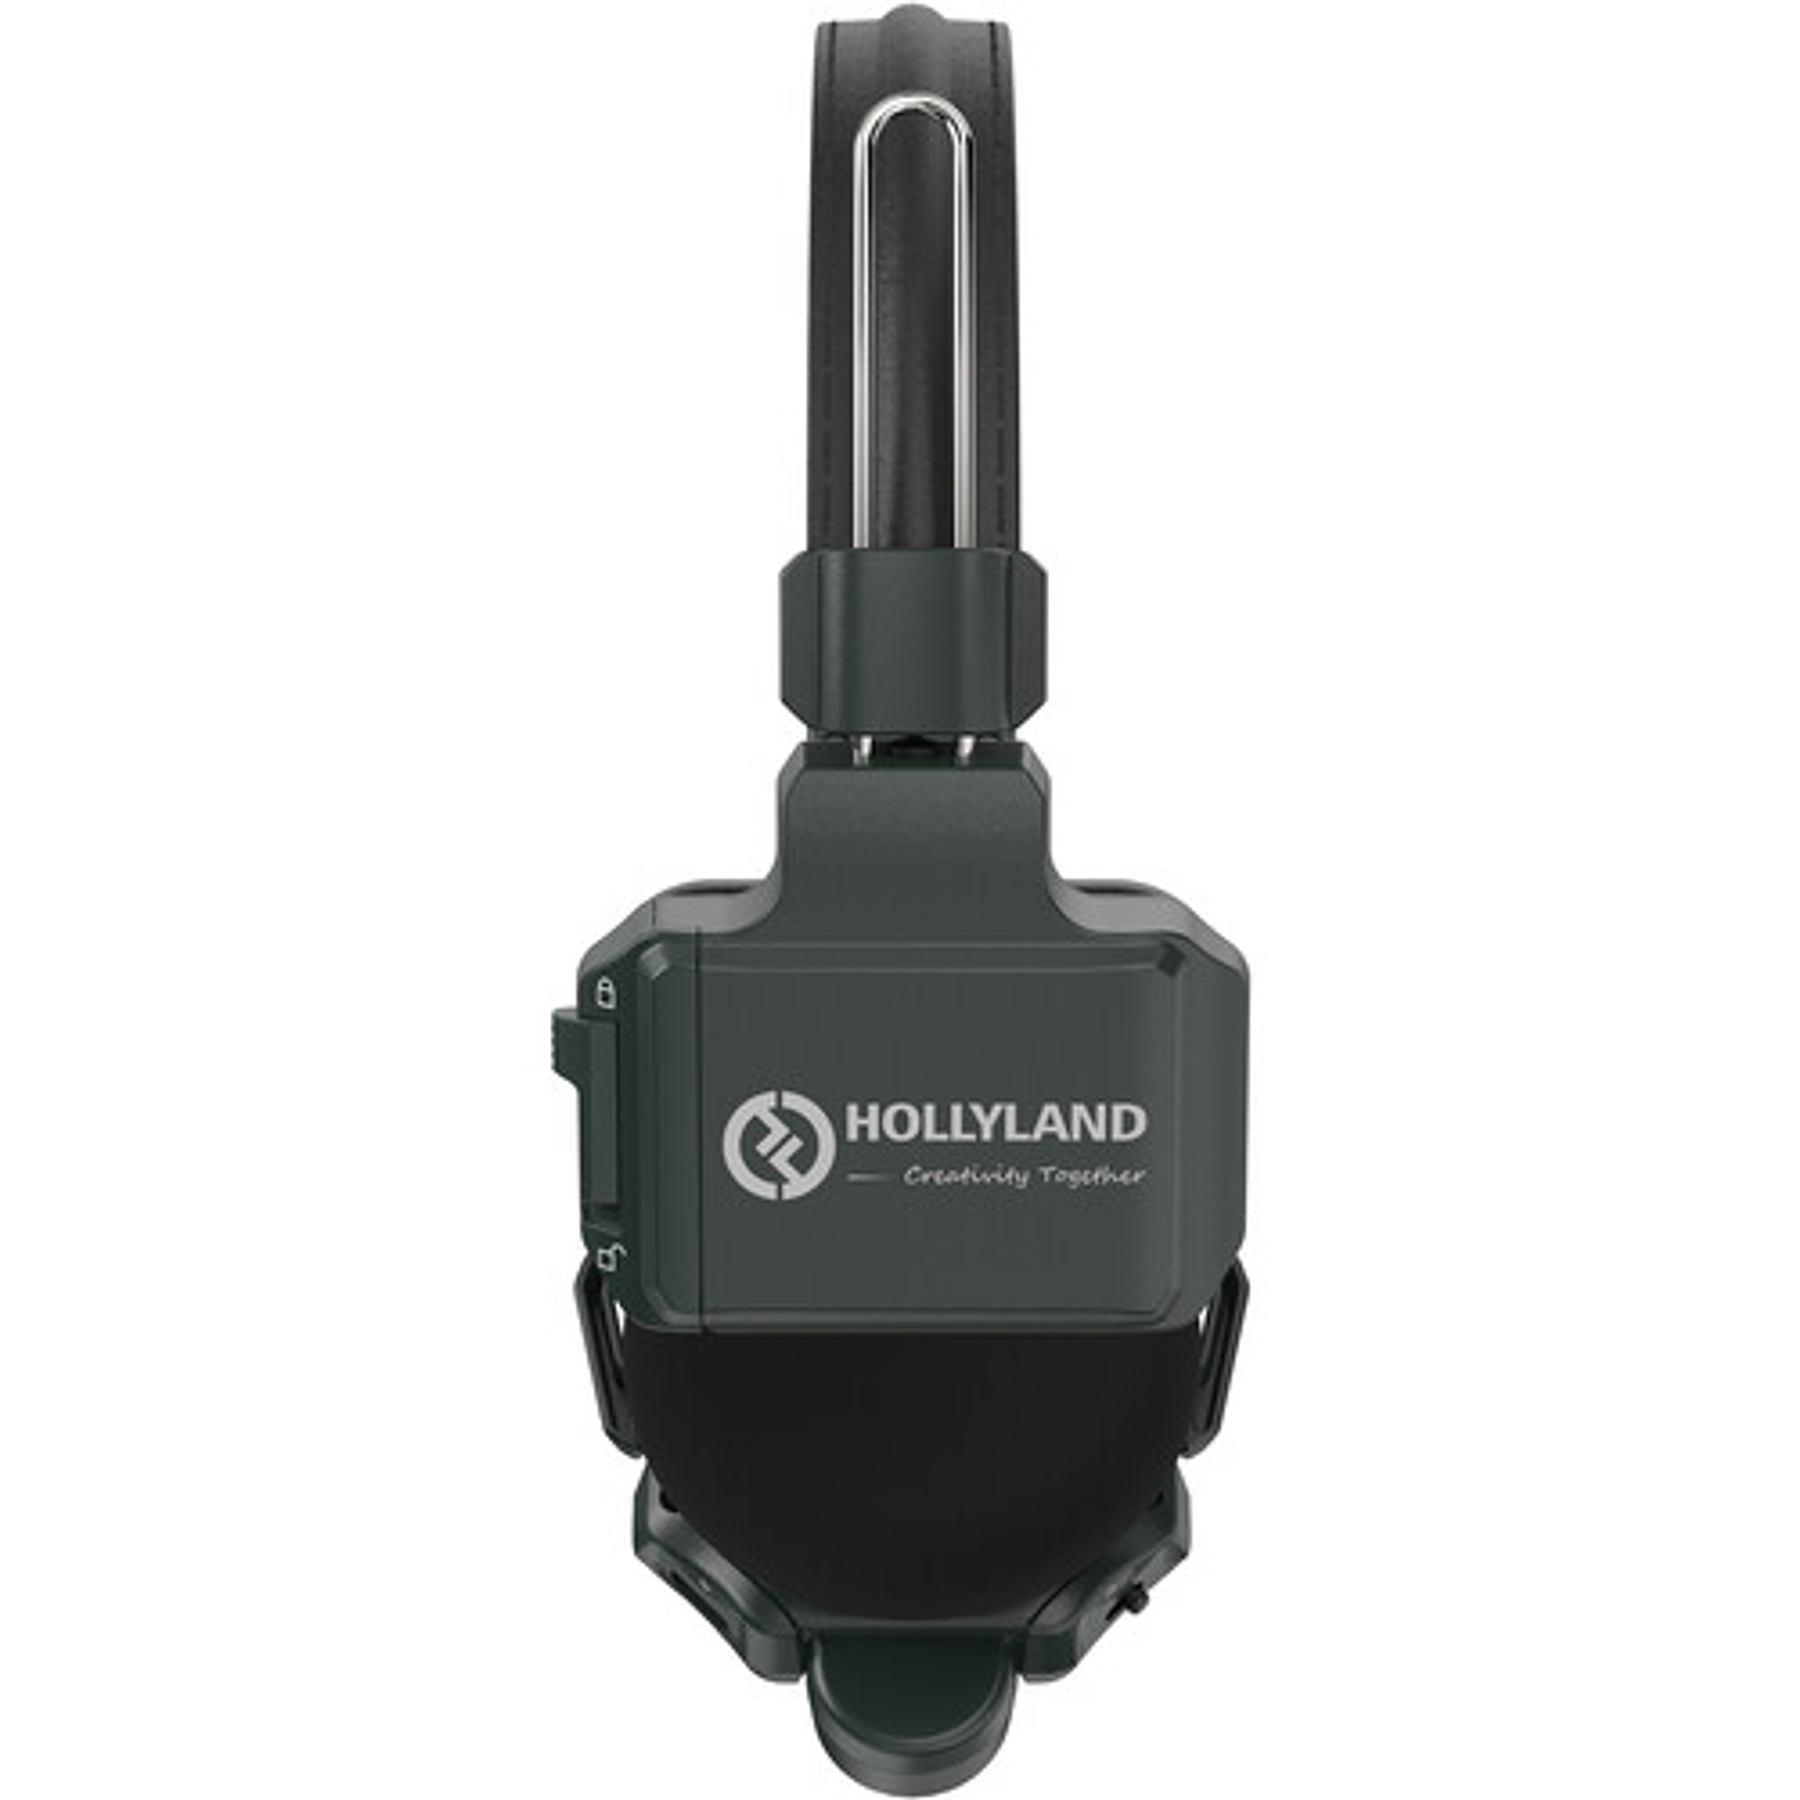 Sistema de intercomunicación DECT inalámbrico Full-Duplex Hollyland Solidcom C1-4S con 4 auriculares (1,9 GHz)